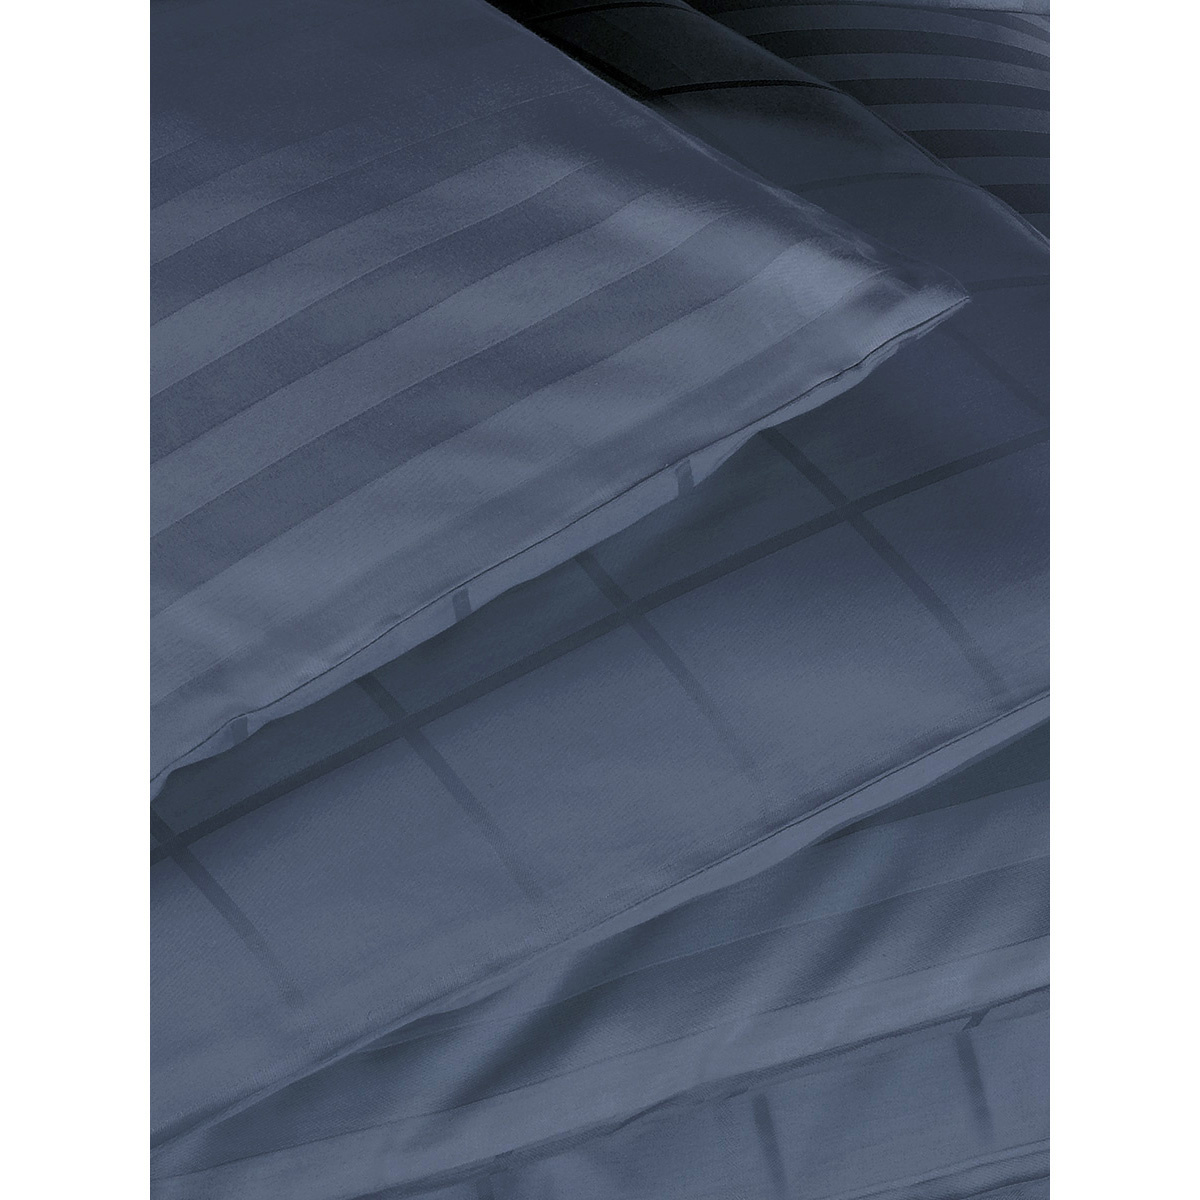 De Witte Lietaer Dekbedovertrek Katoen Satijn Zygo - Lits Jumeaux - 240 x 220 cm - Blauw